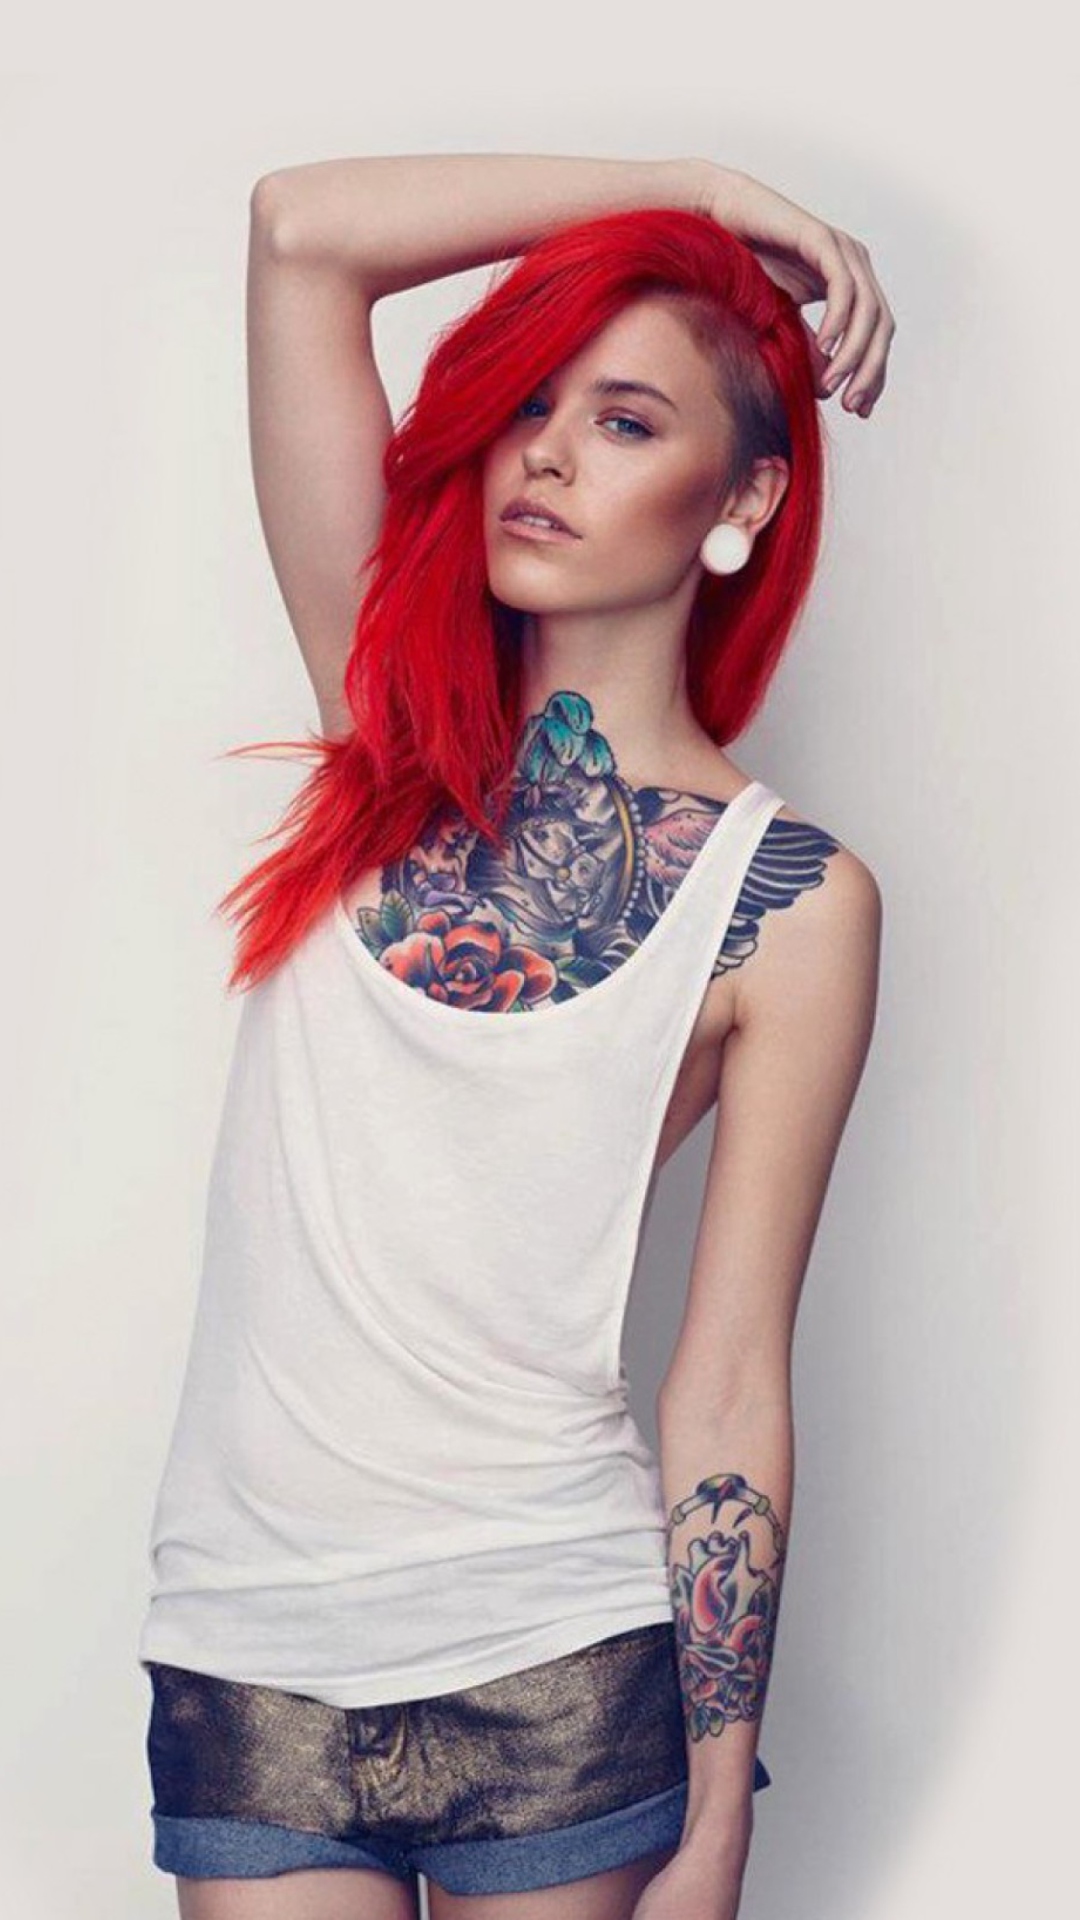 Das Beautiful Tattooed Redhead Wallpaper 1080x1920